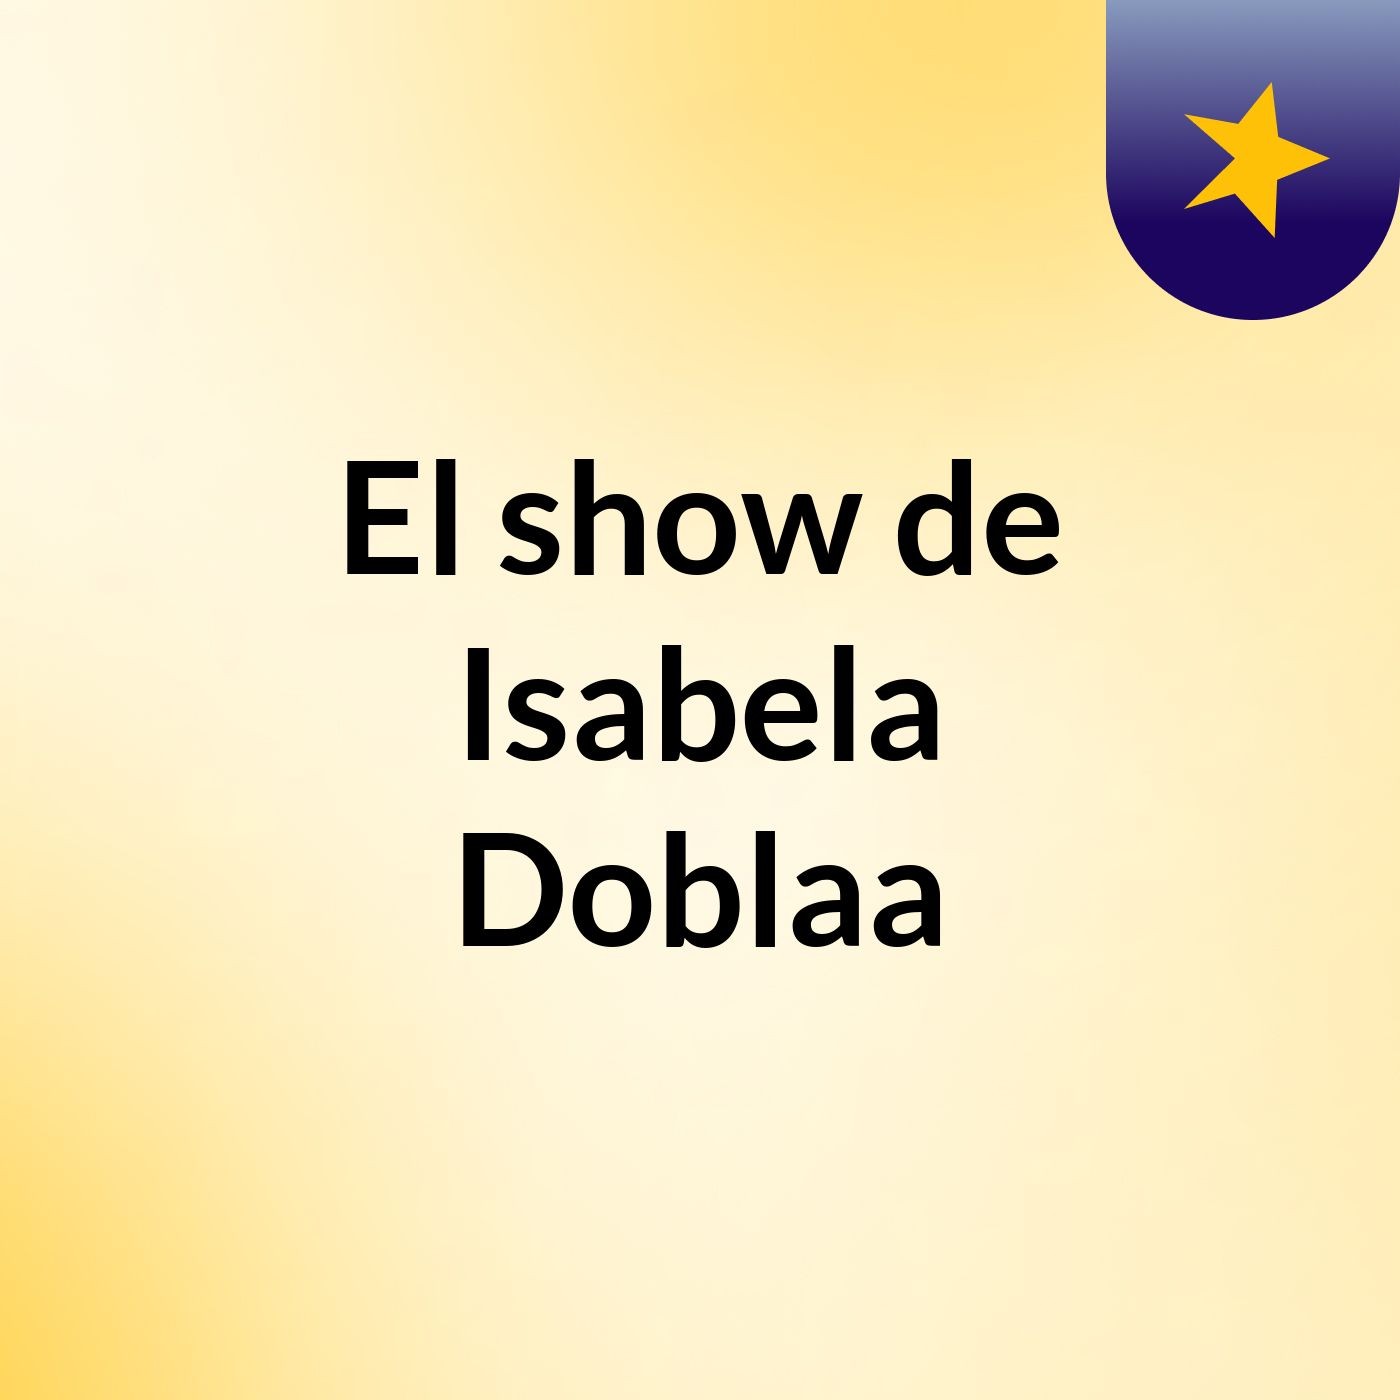 El show de Isabela Doblaa